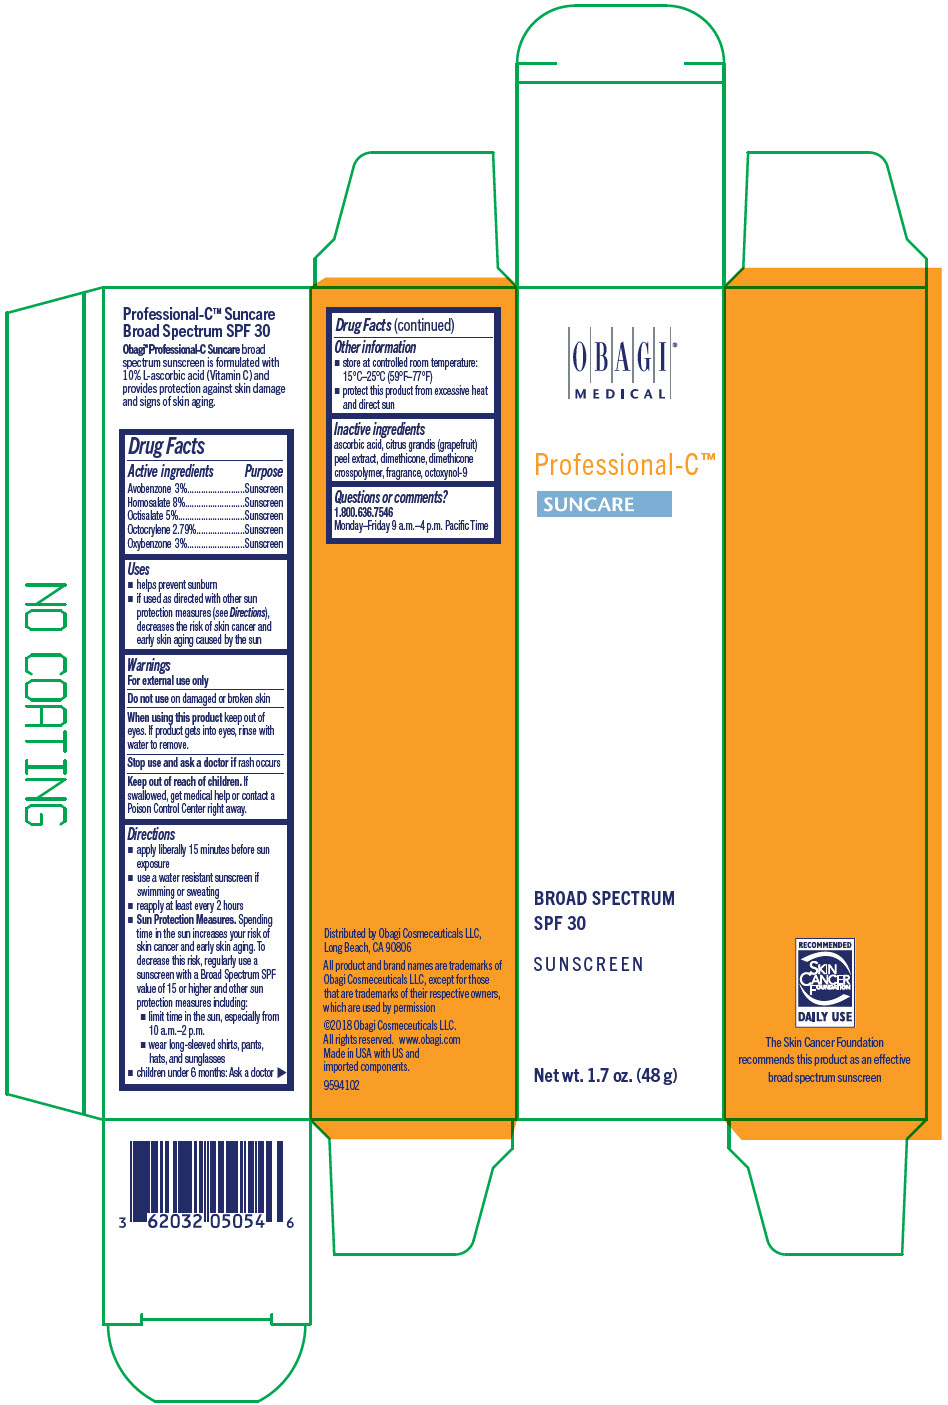 PRINCIPAL DISPLAY PANEL - 48 g Tube Carton